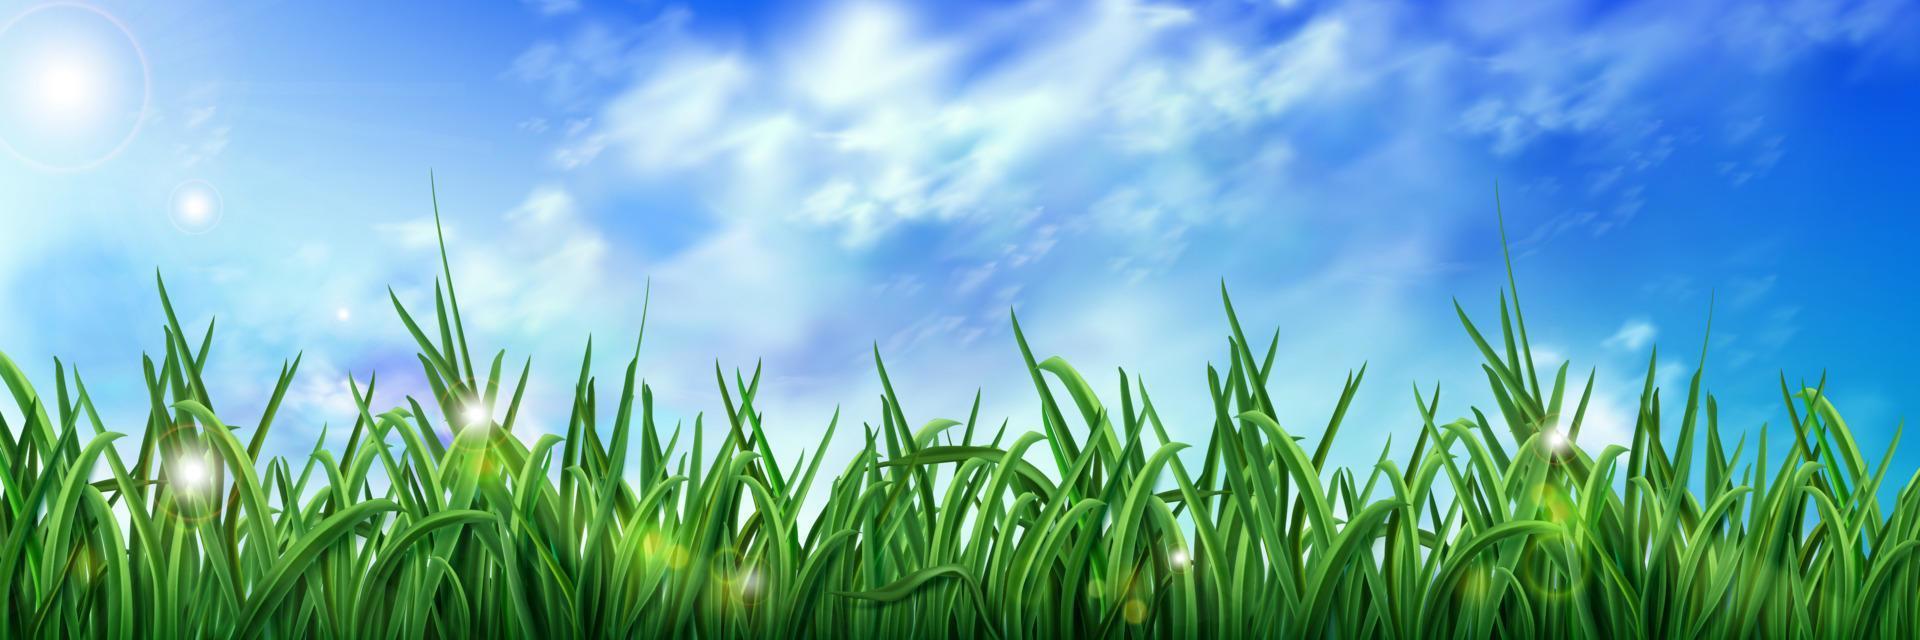 realistisk grön gräs under blå himmel vektor